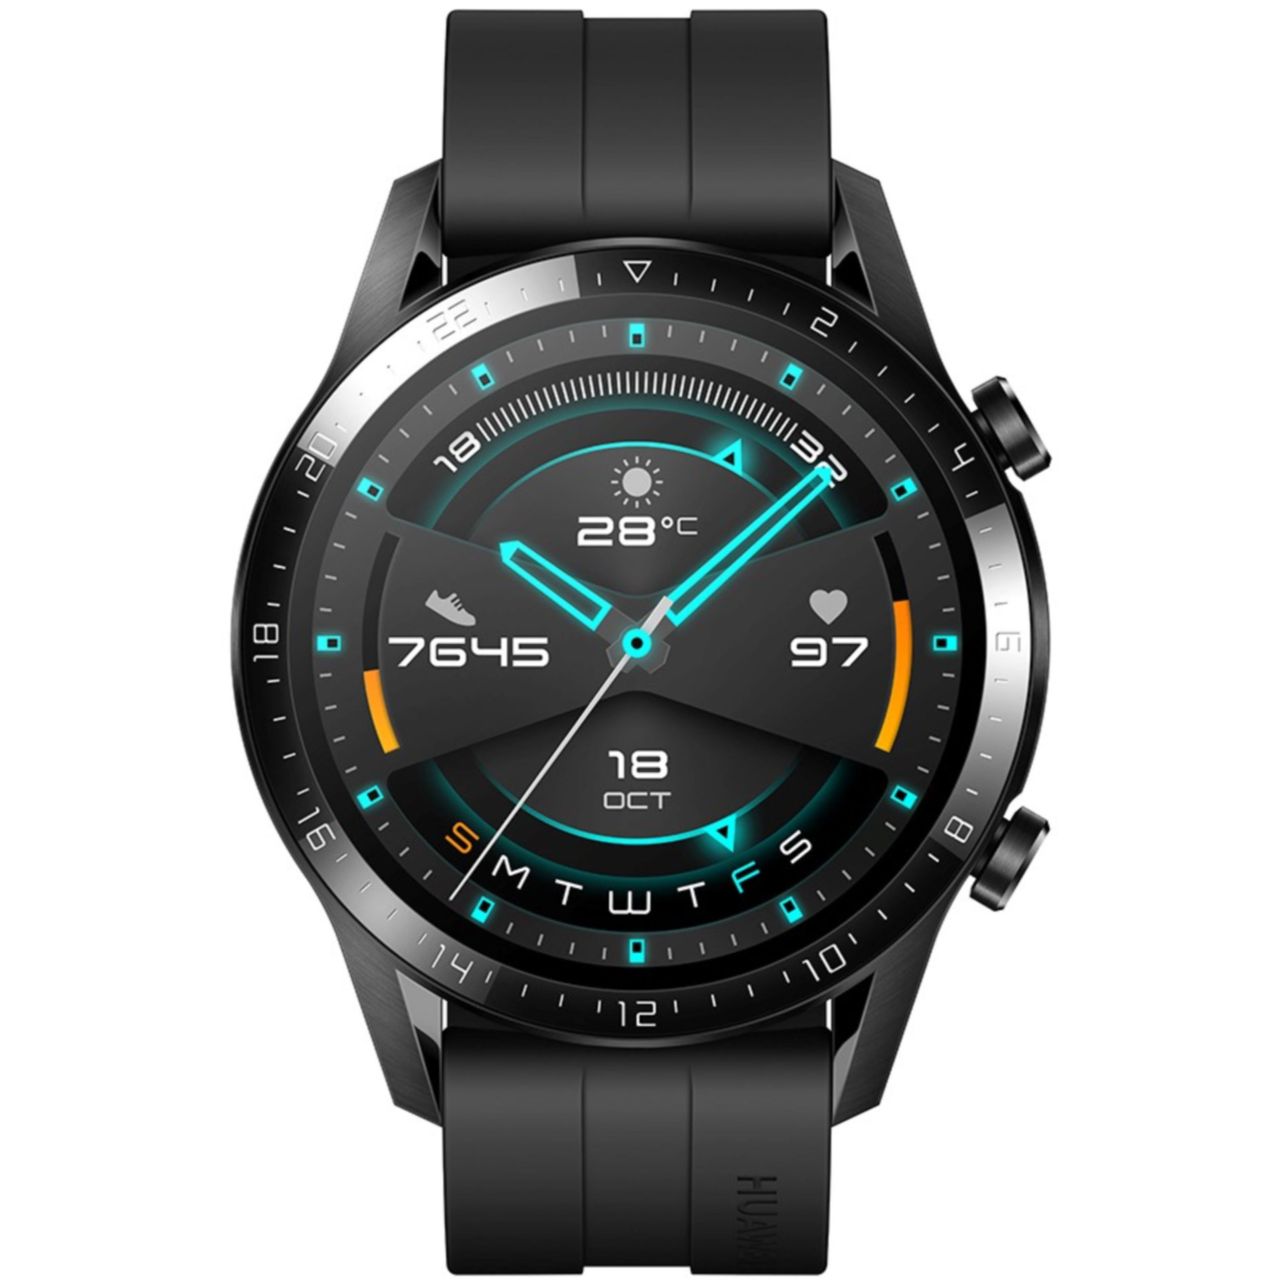 Huawei GT2 Smart Watch Review